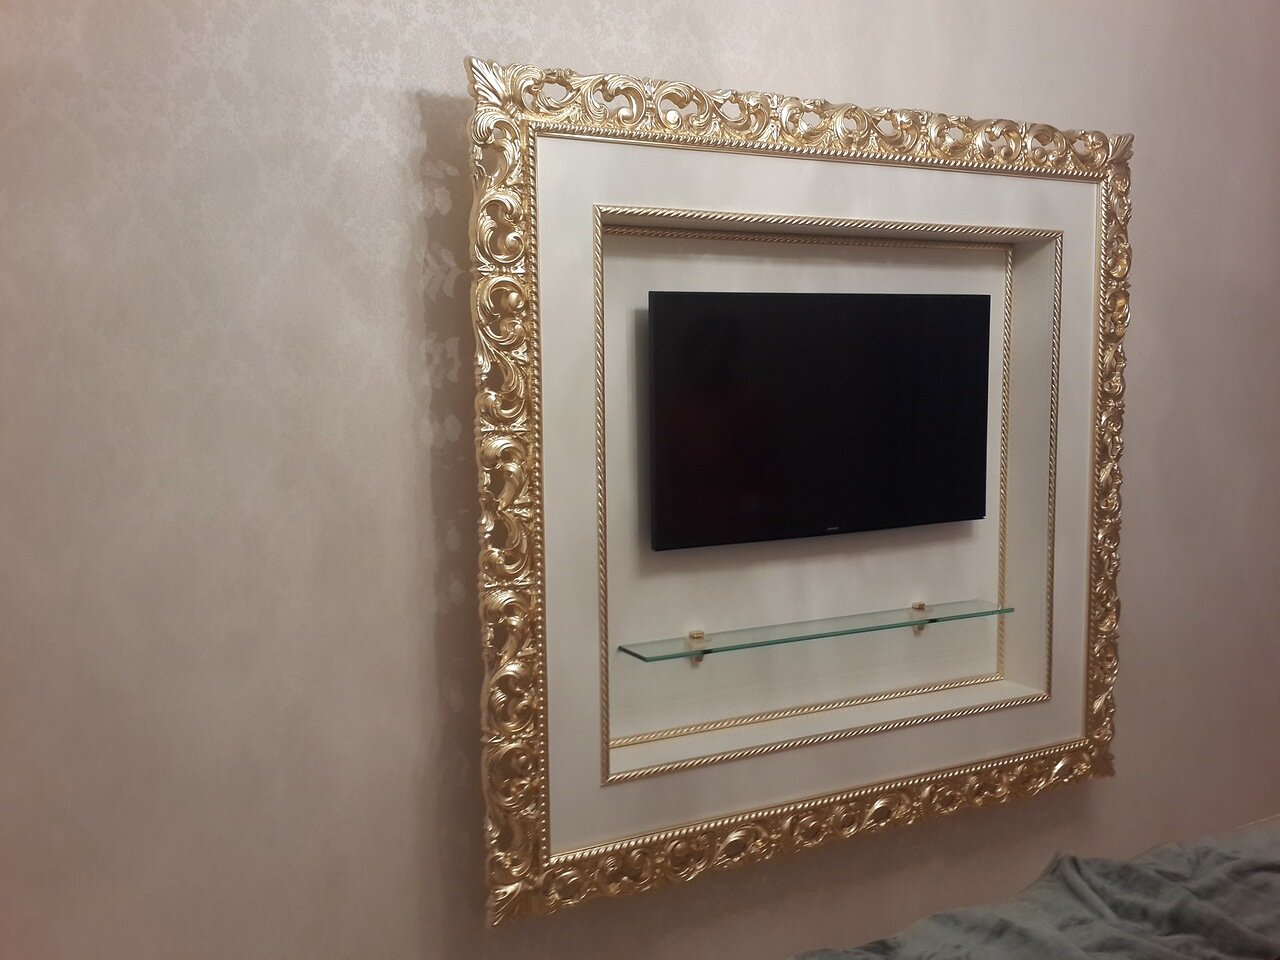 Телевизионный портал в золотом резном багете.jpg